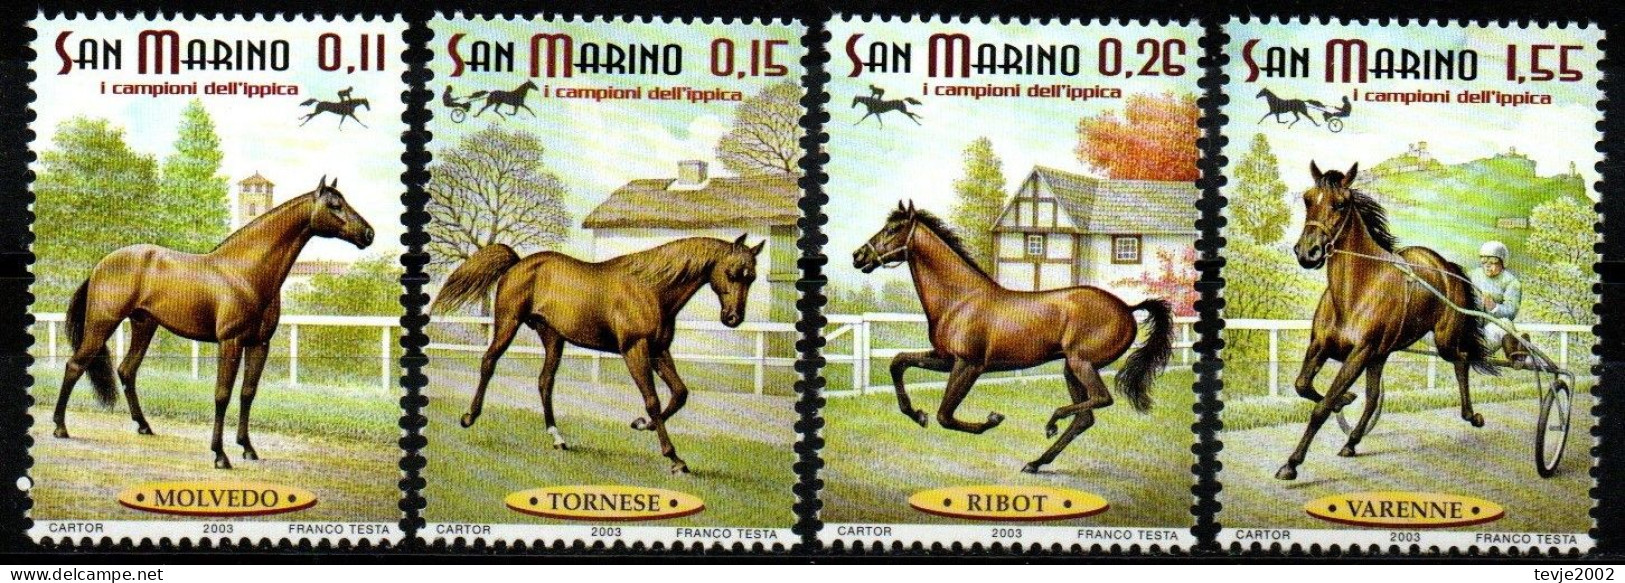 San Marino 2003 - Mi.Nr. 2087 - 2090 - Postfrisch MNH - Tiere Animals Pferde Horses - Chevaux